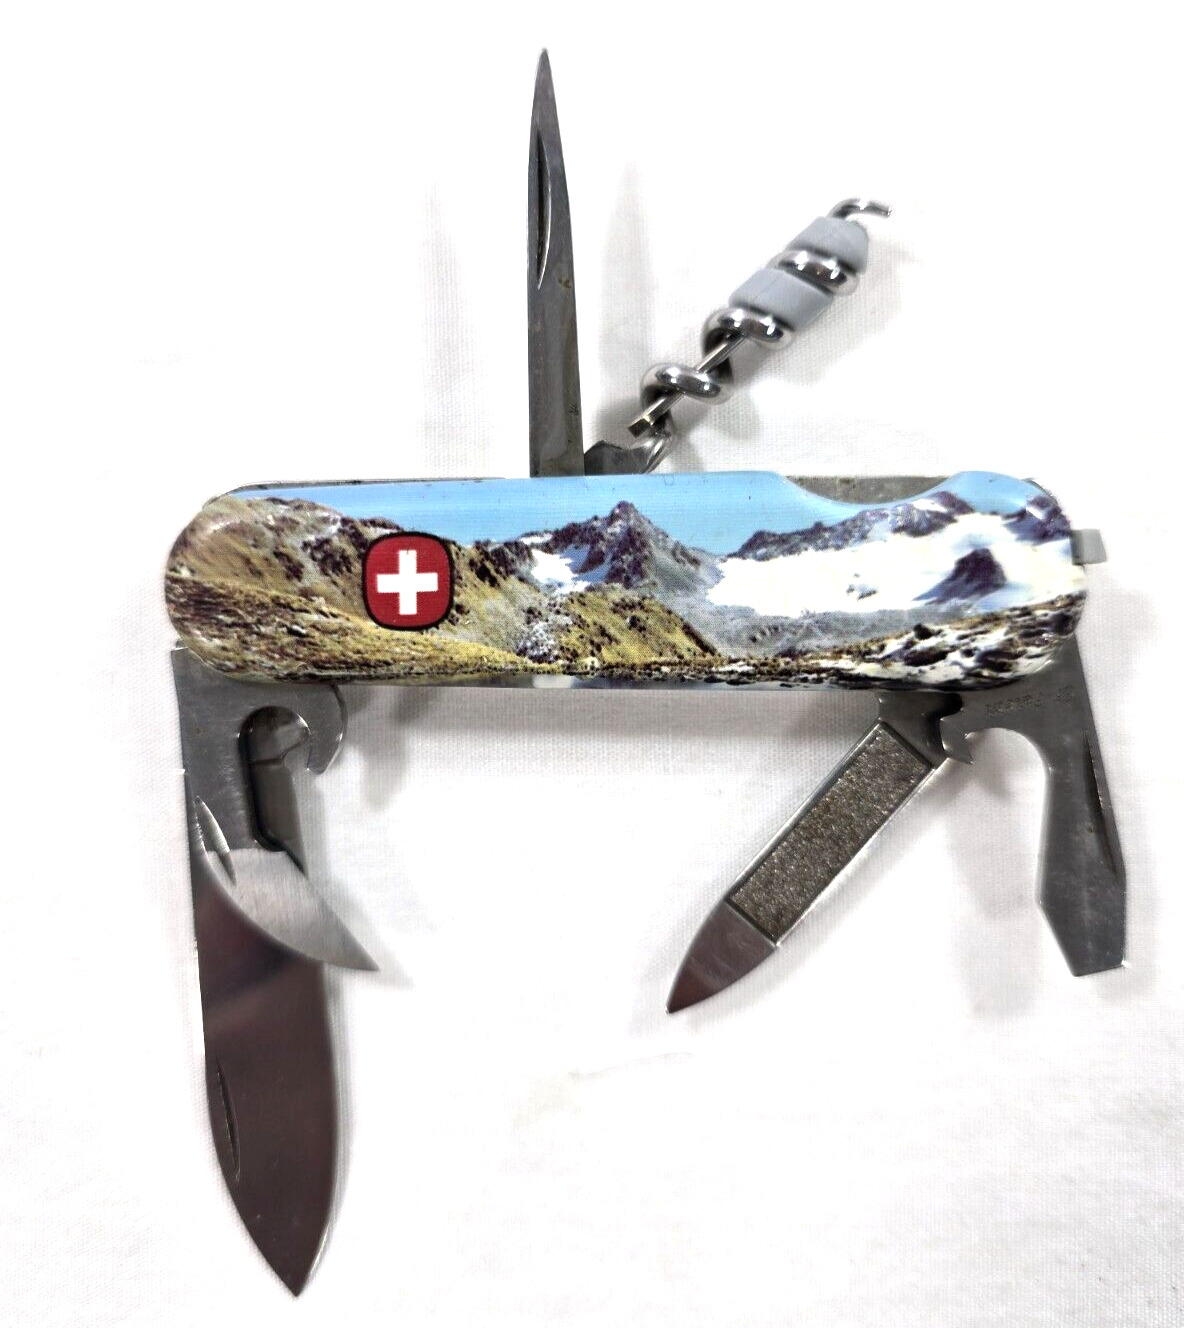 Wenger Delemont Swiss Army 6 Blade Folding Pocket Knife w/ Color Swiss Landscape